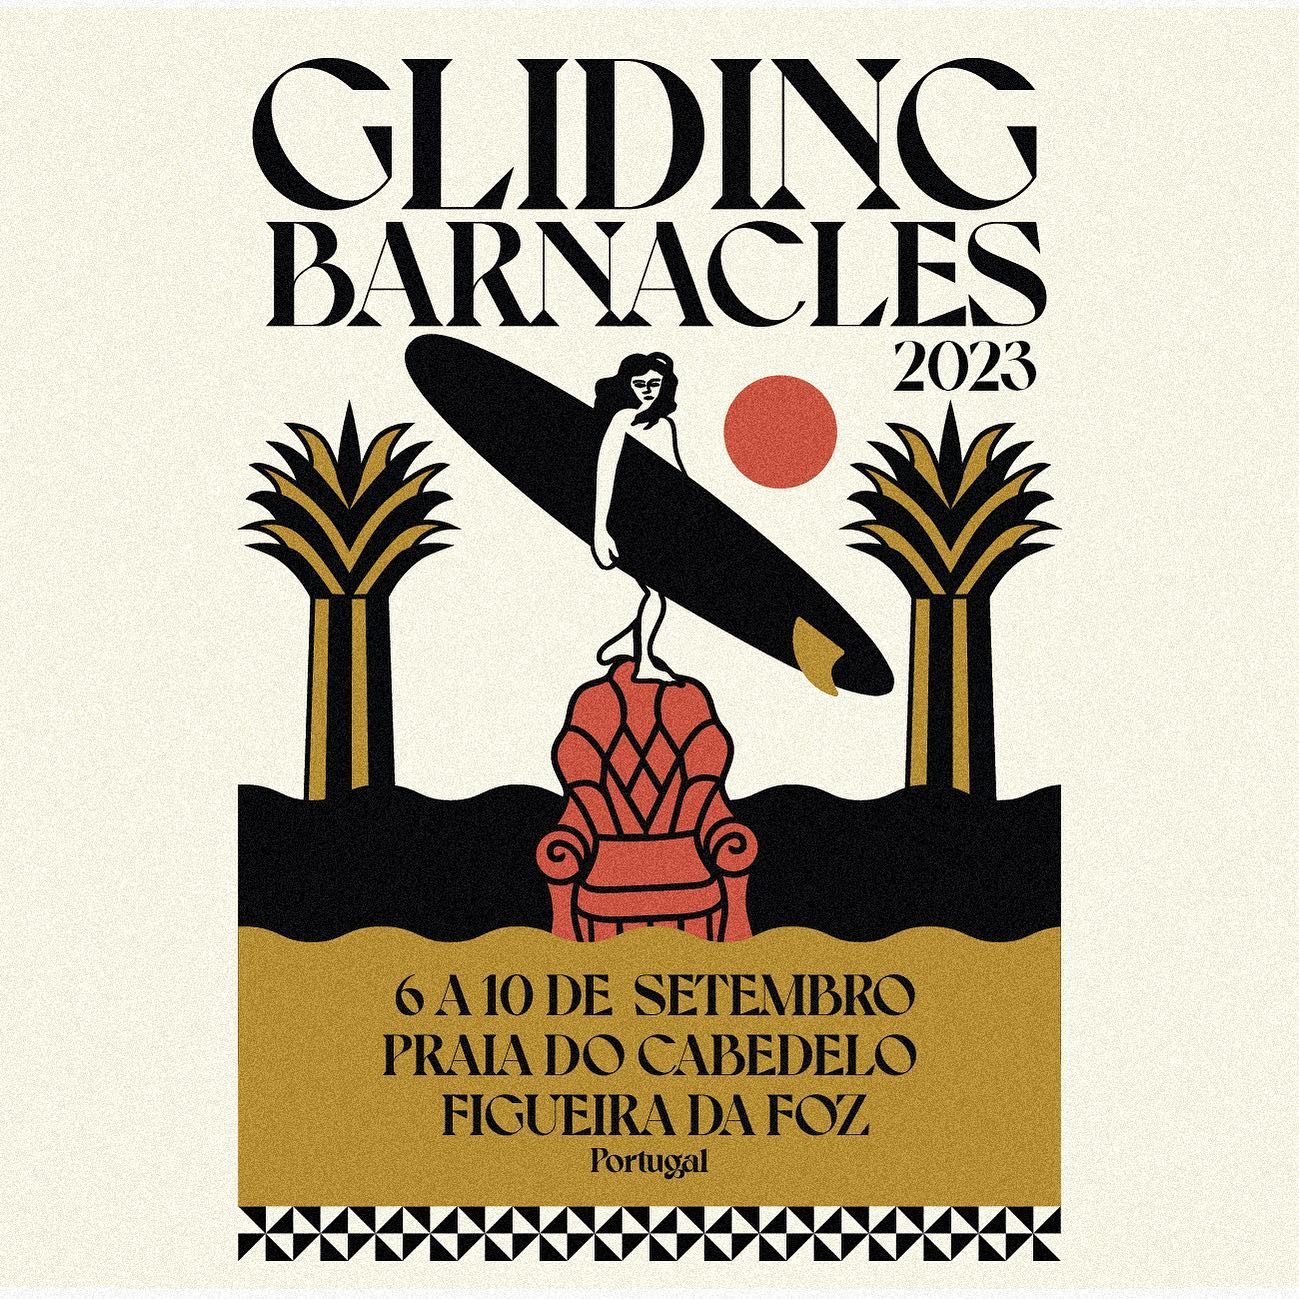 gliding_barnacles_cabedelo_figueiradafoz_2023_cartaz